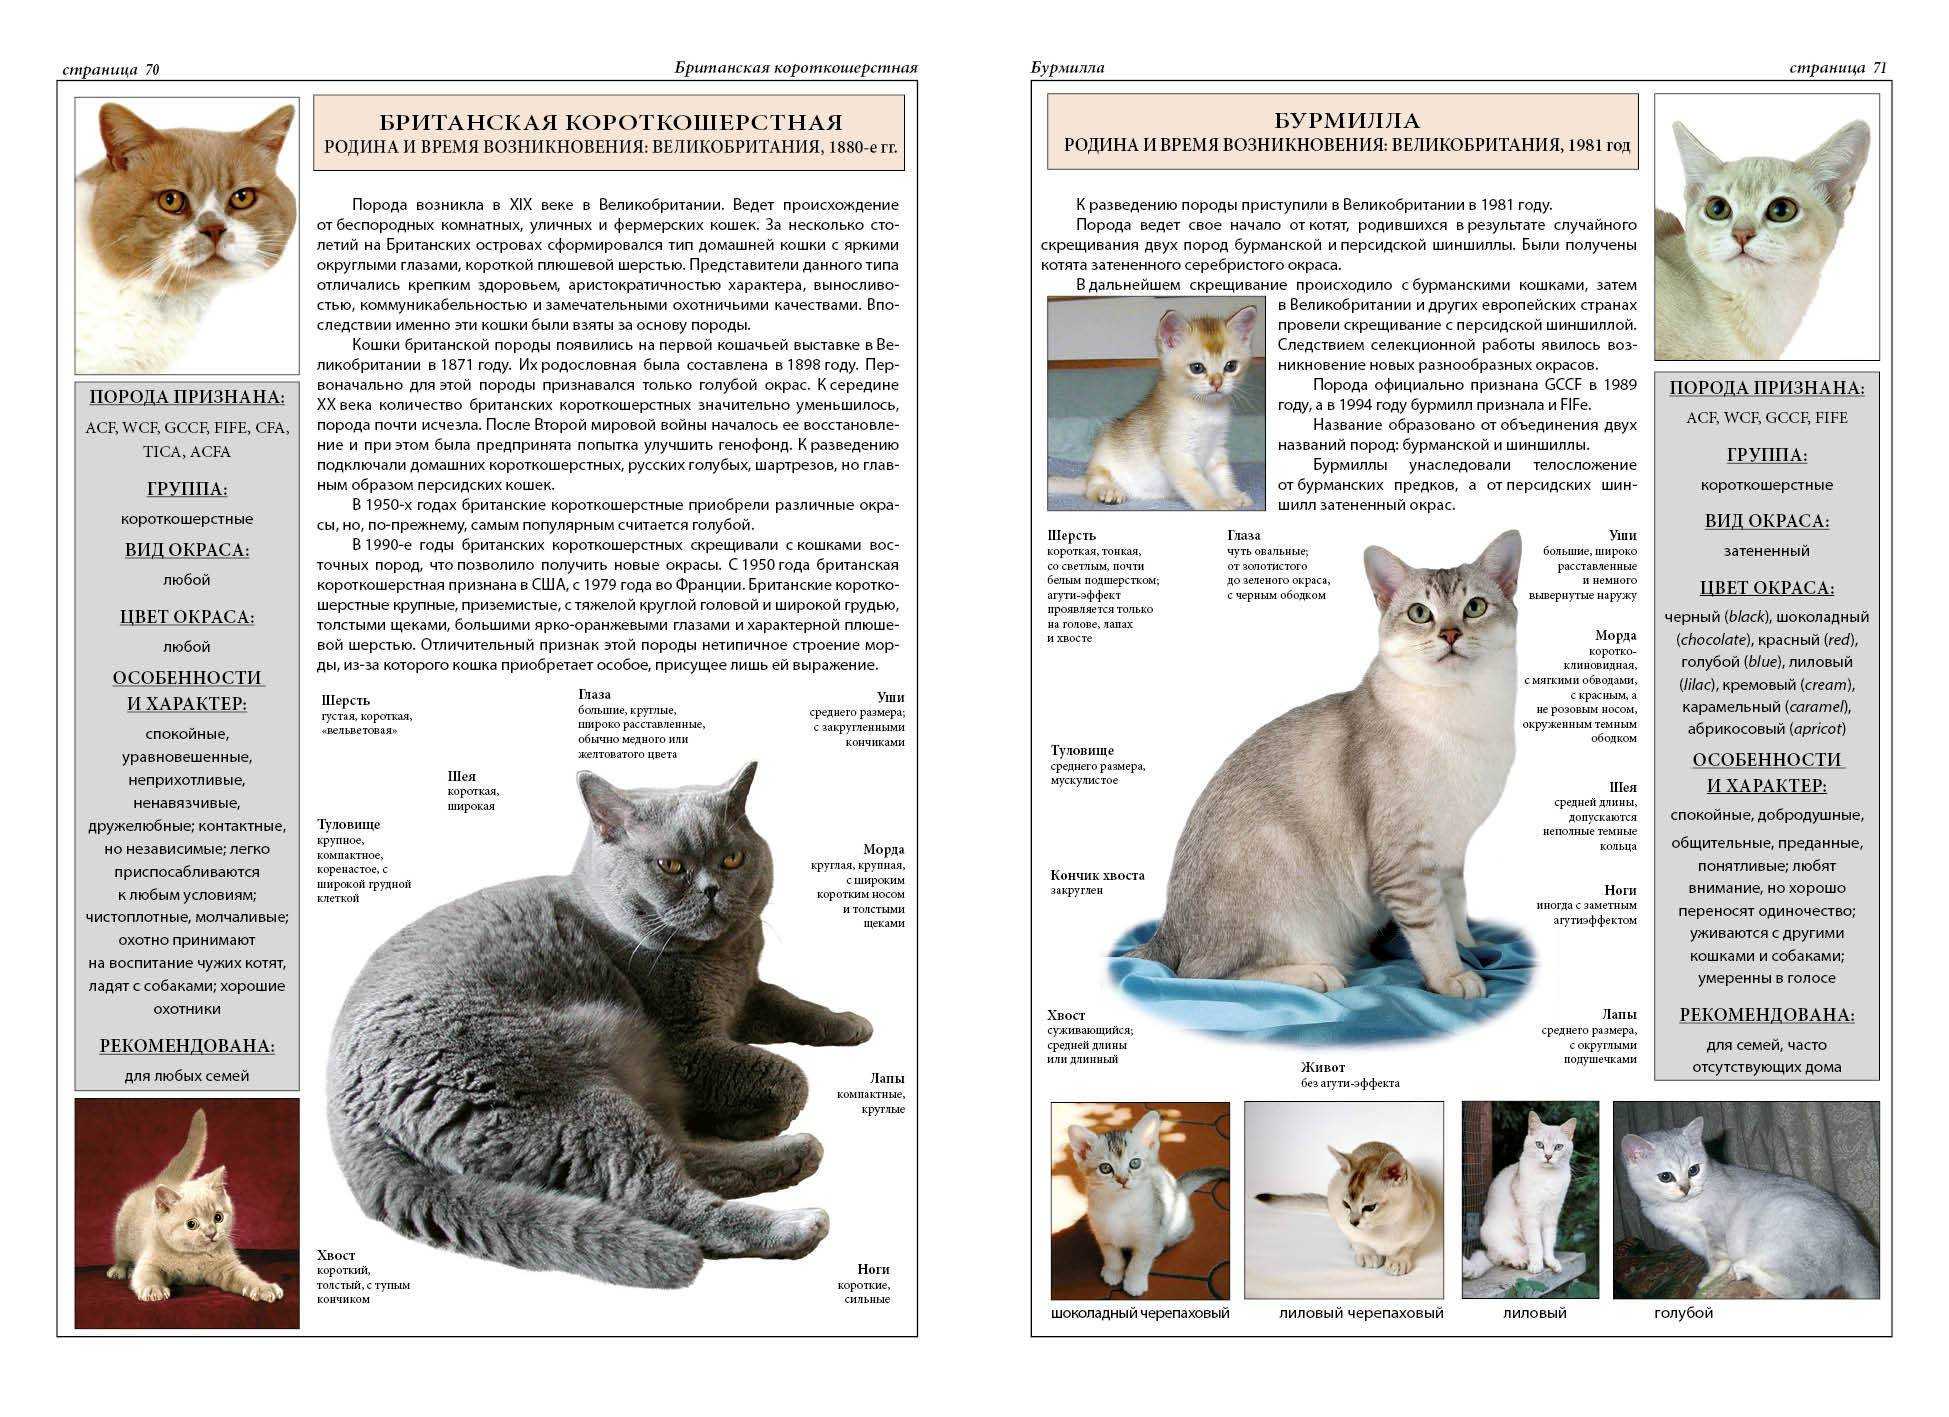 Британская короткошерстная кошка: здоровье, уход и особенности породы